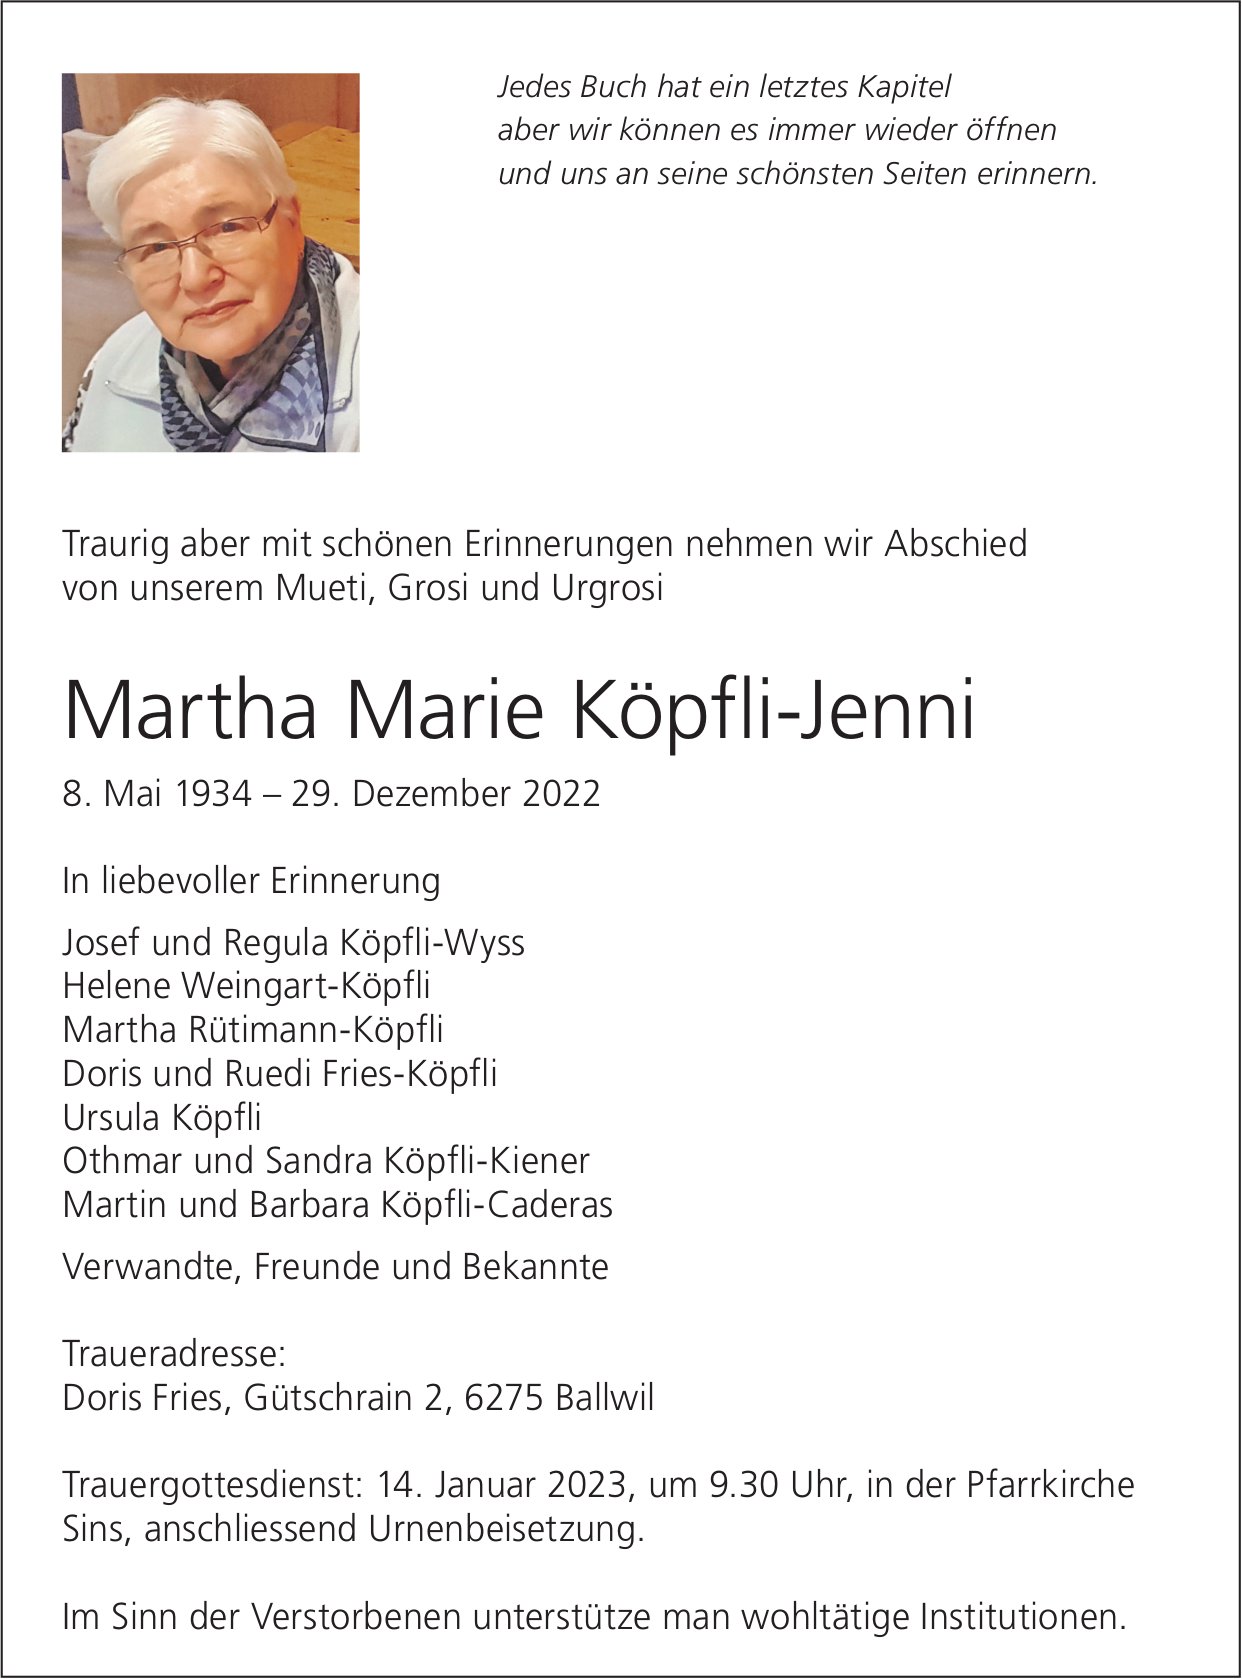 Köpfli-Jenni Martha Marie, Dezember 2022 / TA